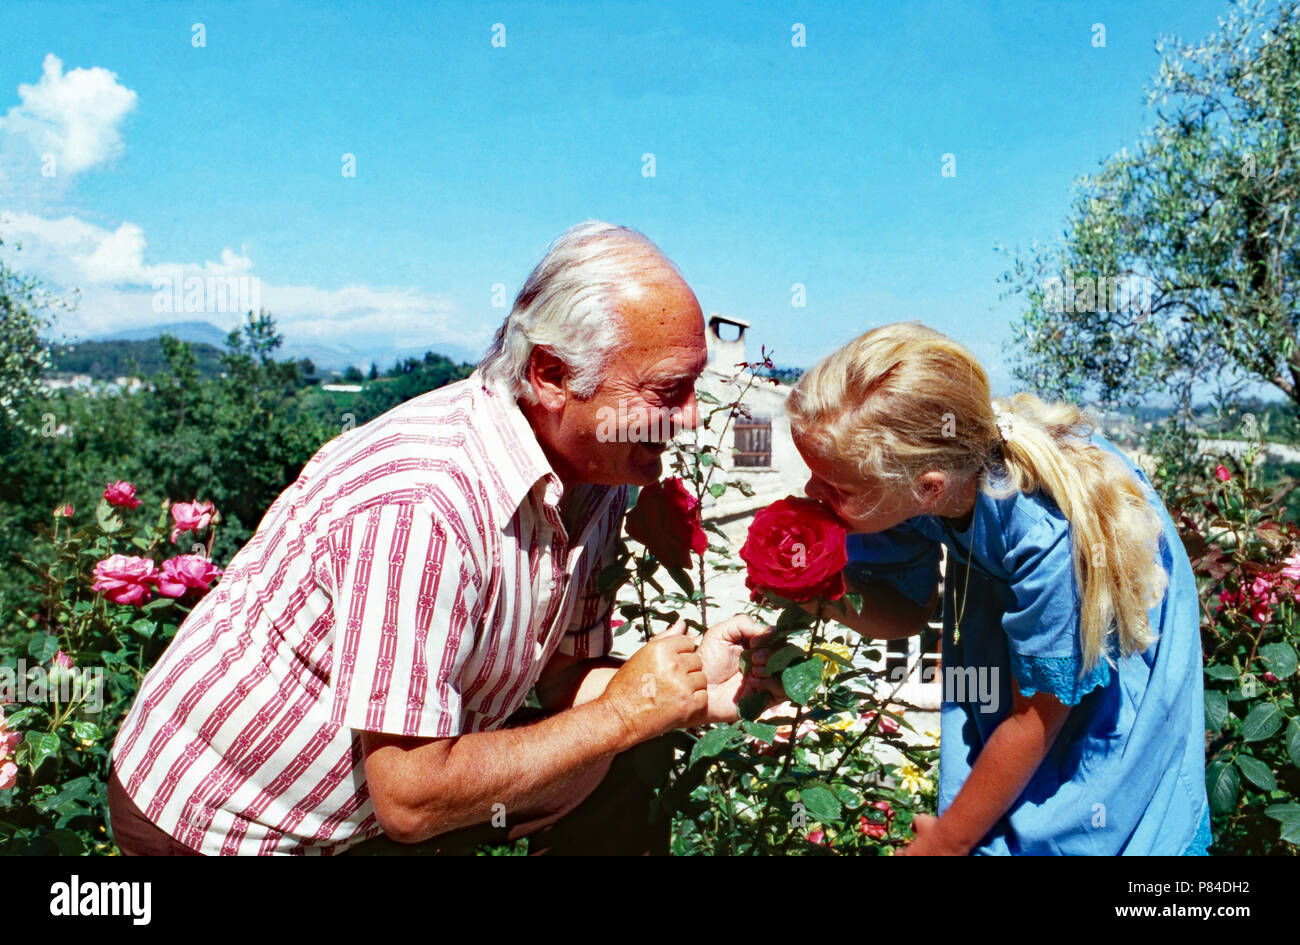 Wis Curd Jürgens mit Tochter Mirjam im türkeirundreise in Saint Paul de Vence, Frankreich 1978. Schauspieler Curd Jürgens mit Tochter Mirjam im Sommer Urlaub in Saint Paul de Vence, Frankreich 1978. Stockfoto